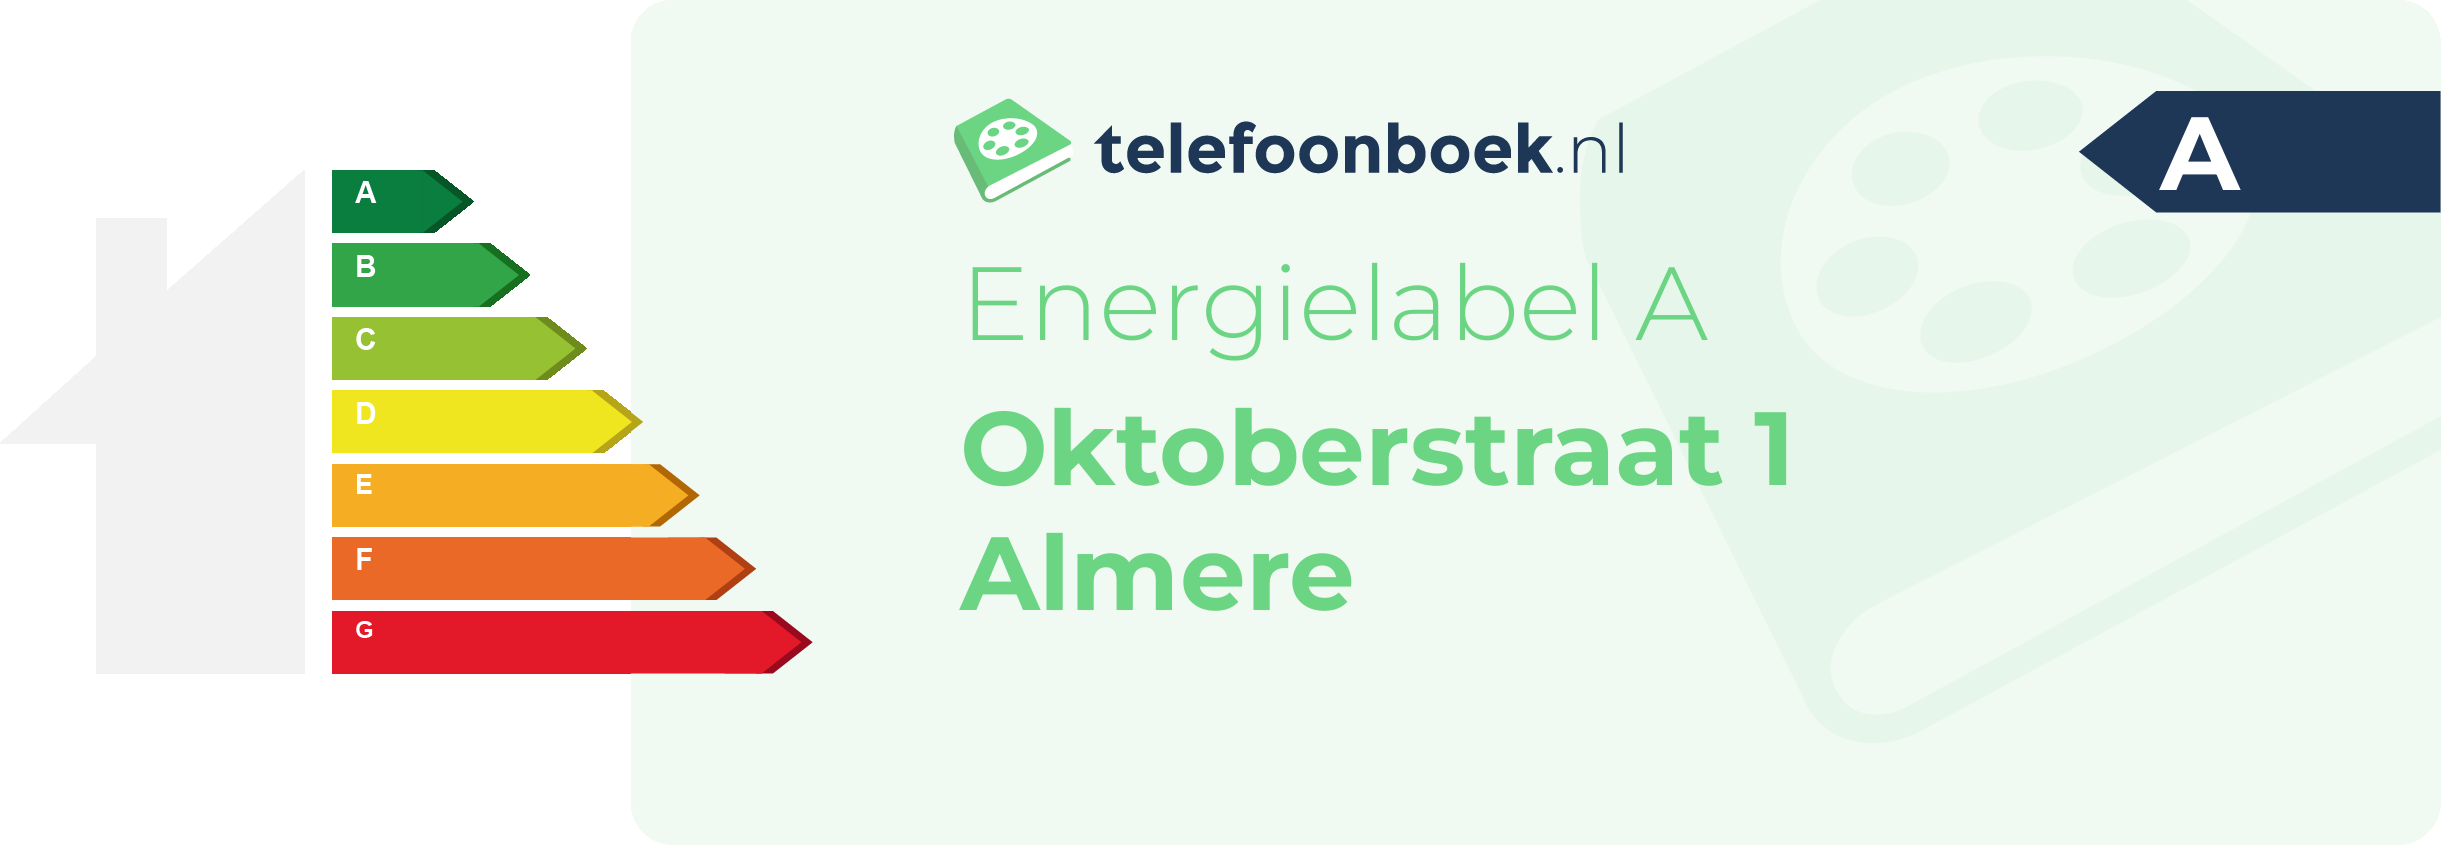 Energielabel Oktoberstraat 1 Almere